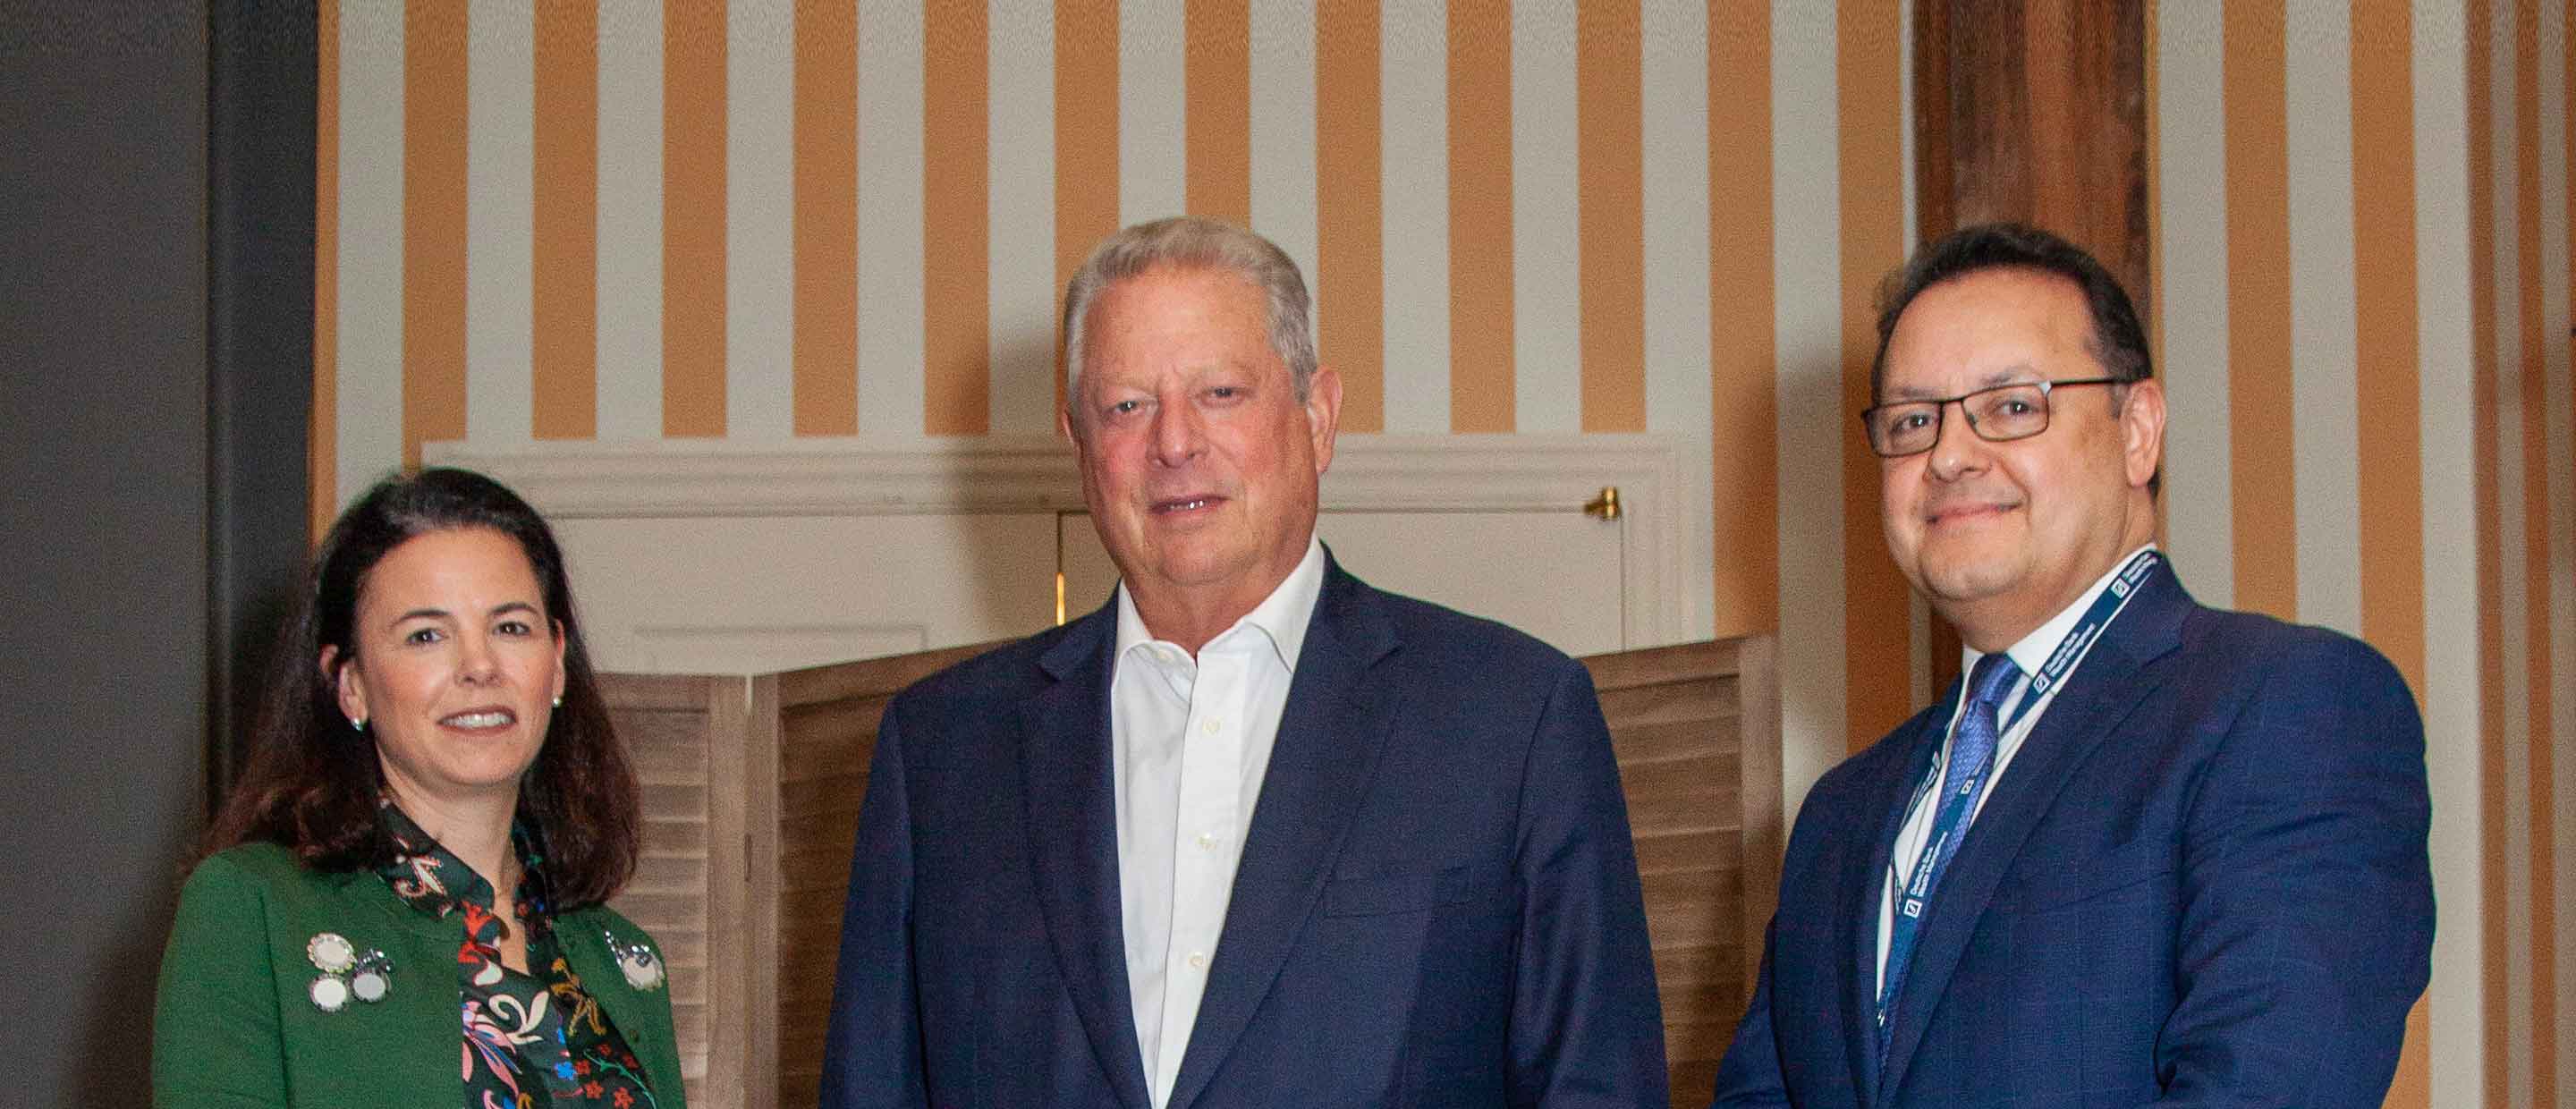 Al Gore Deutsche Bank Innovation Summit